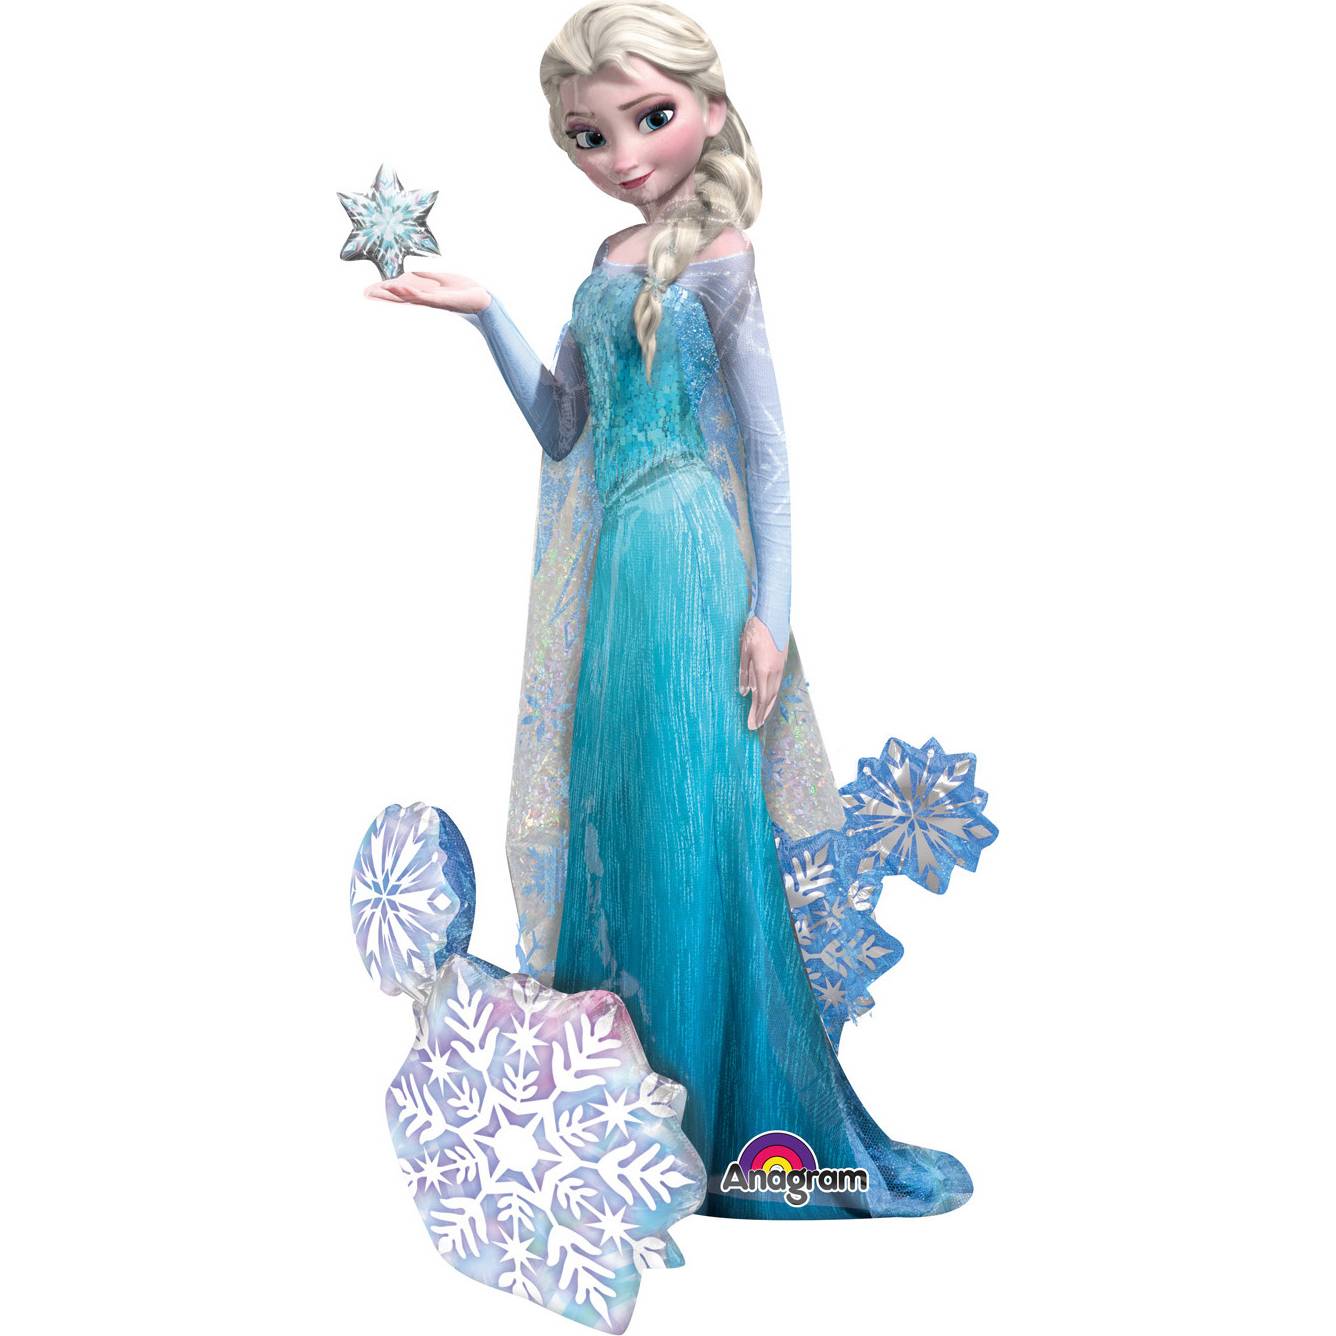 Obří fóliový balónek 144x88cm Frozen - Ledové království Elsa Amscan